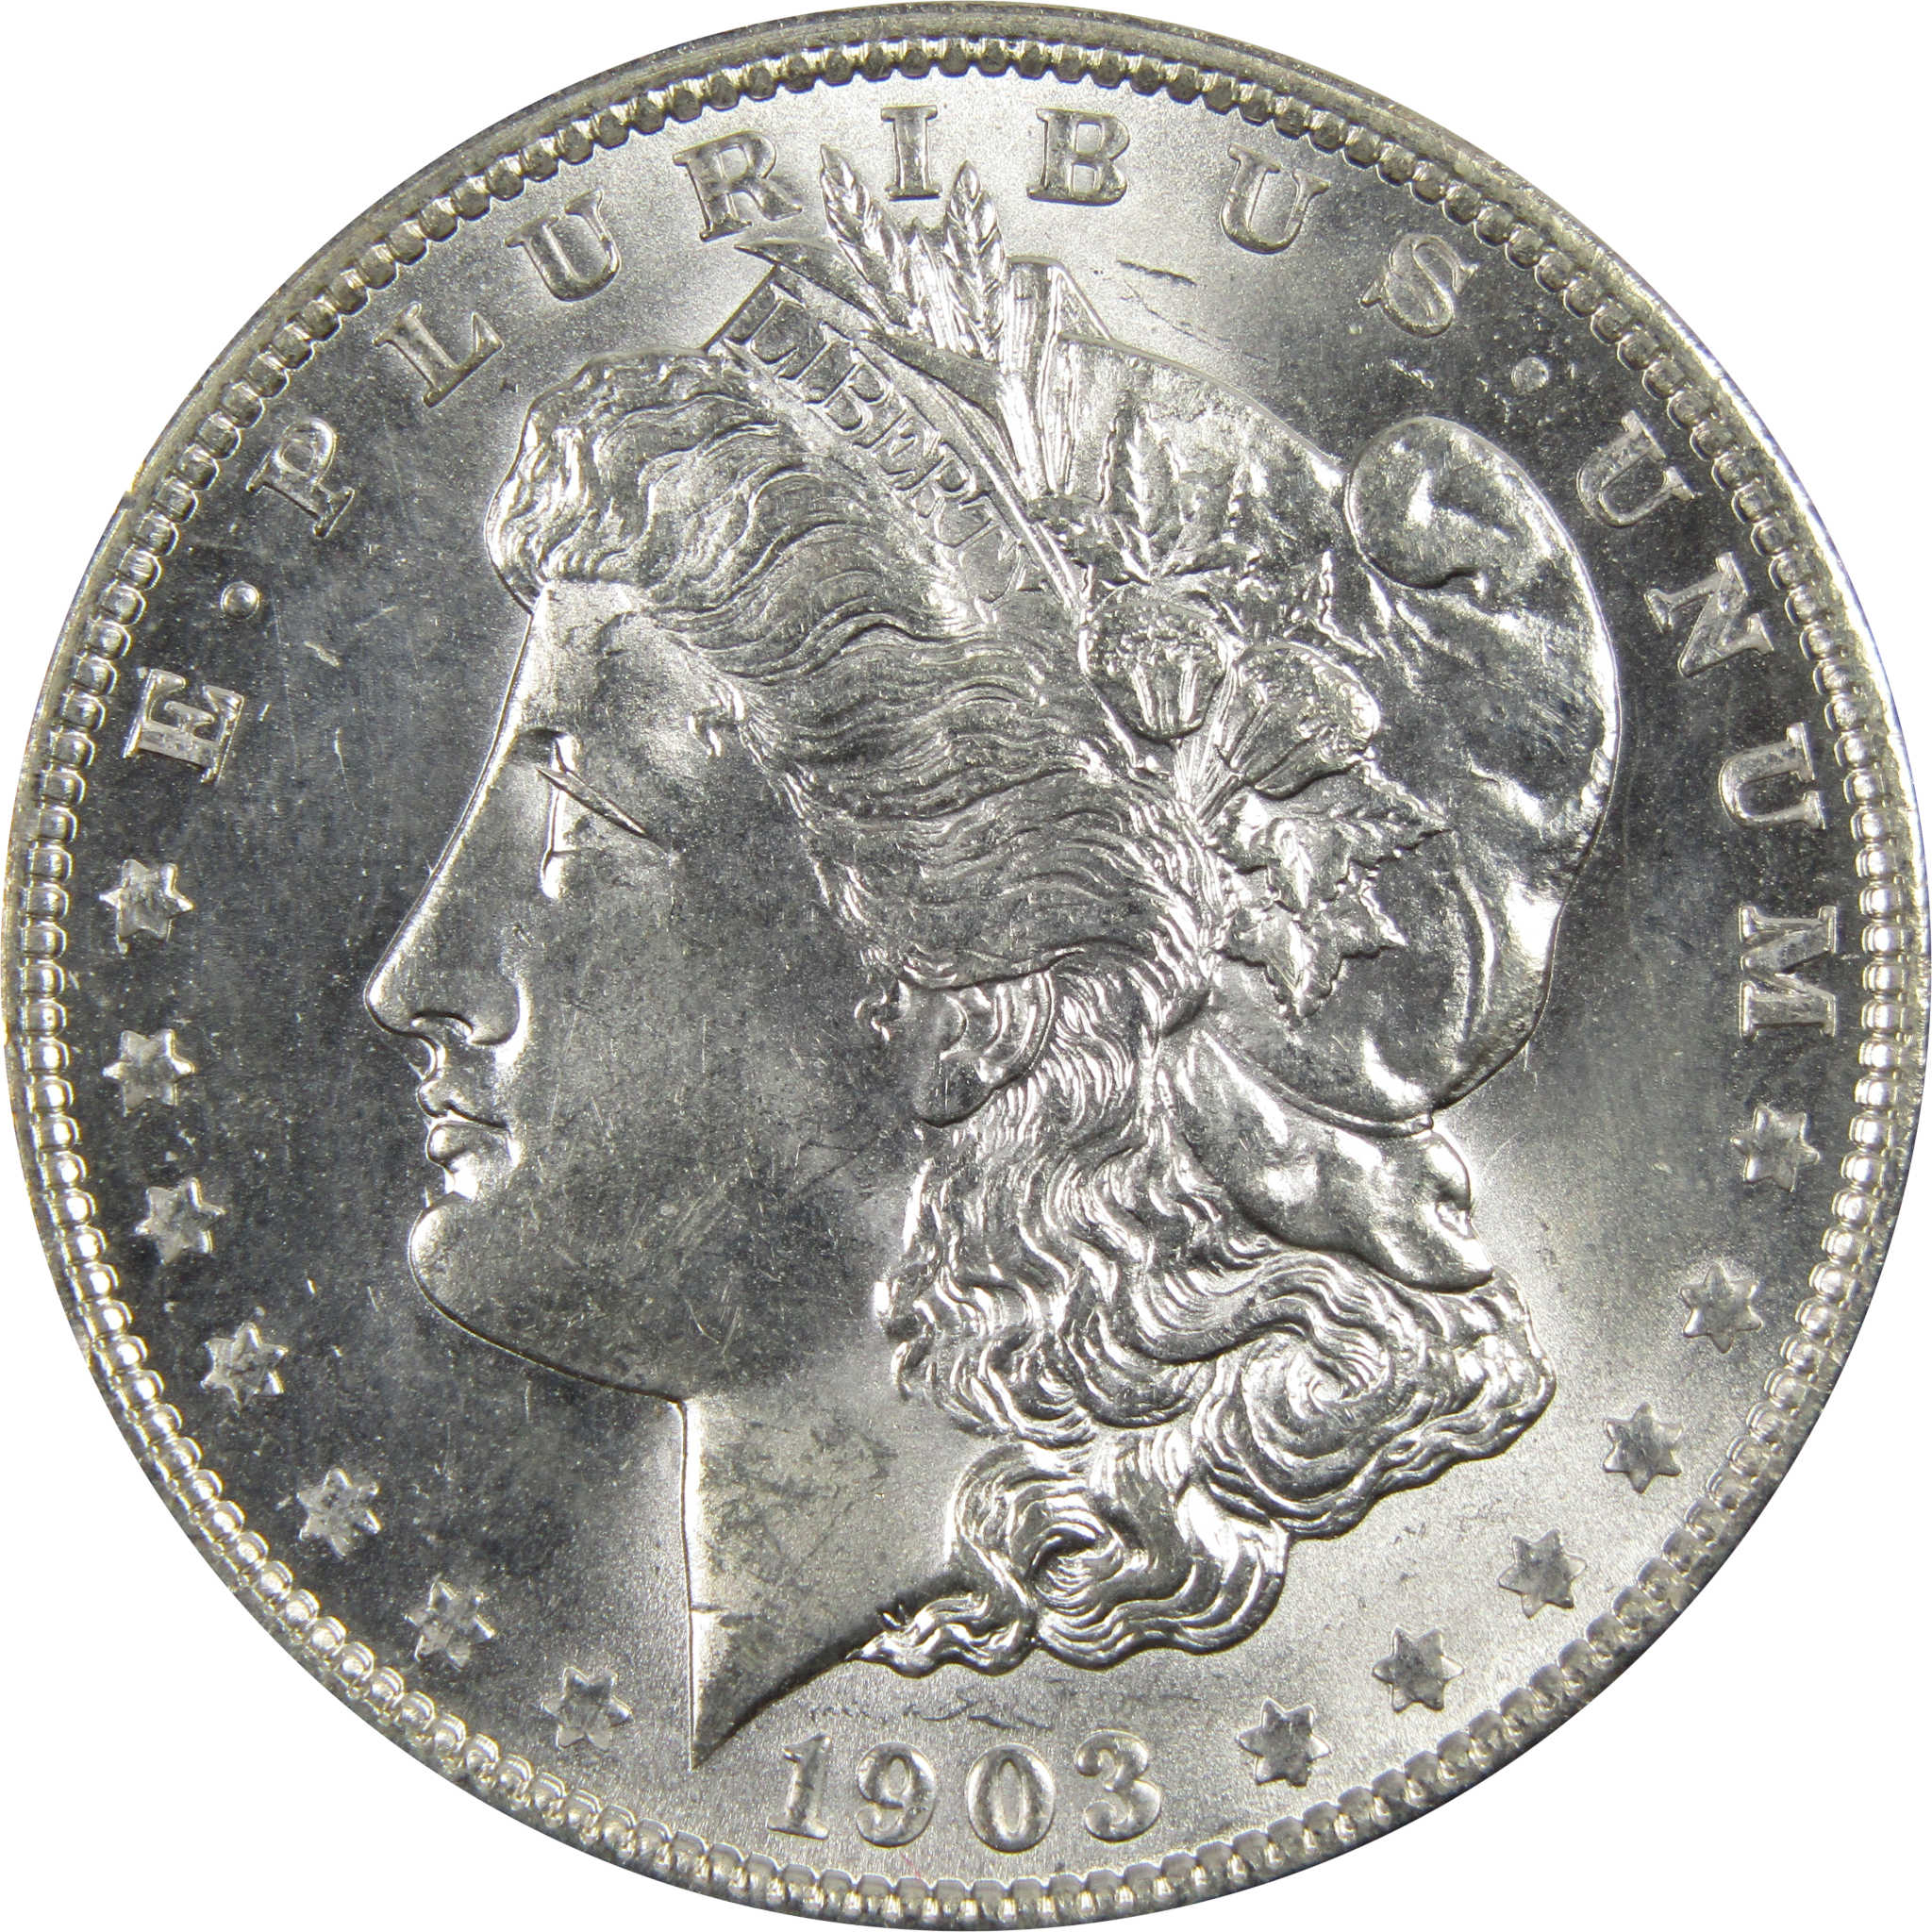 1903 O Morgan Dollar BU Choice Uncirculated 90% Silver $1 SKU:I7917 - Morgan coin - Morgan silver dollar - Morgan silver dollar for sale - Profile Coins &amp; Collectibles